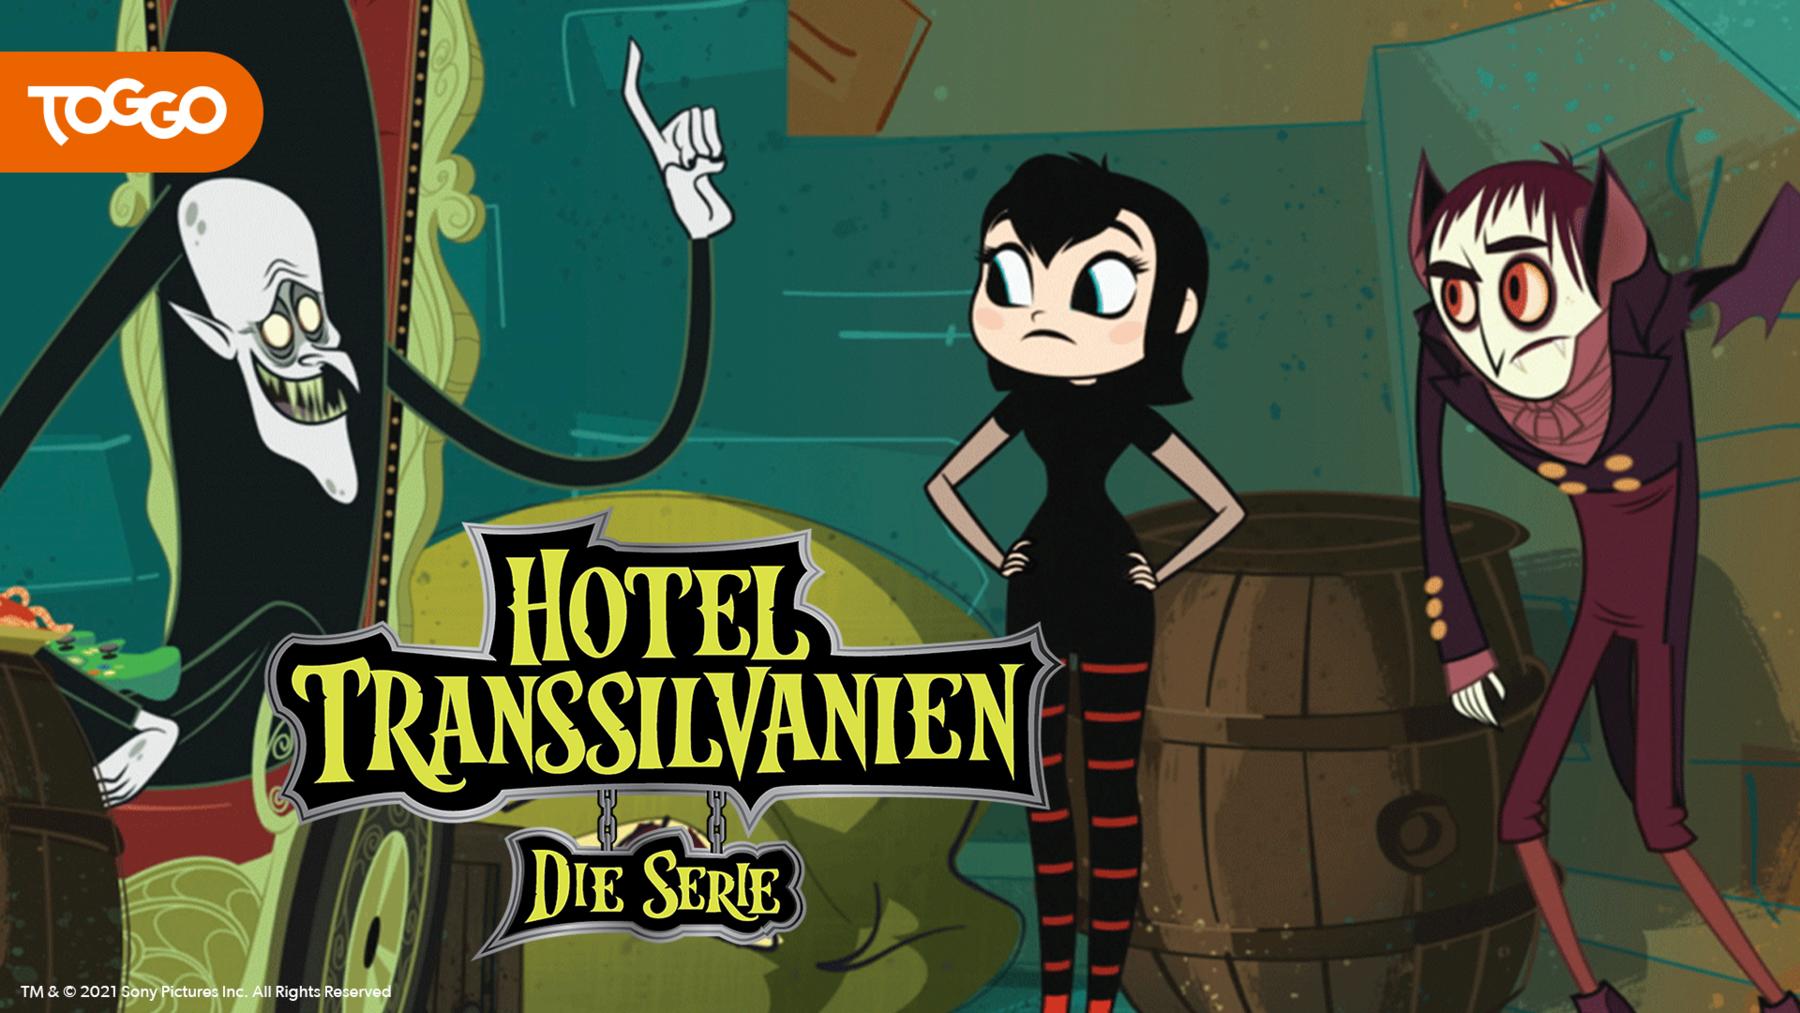 Hotel Transsilvanien - Die Serie